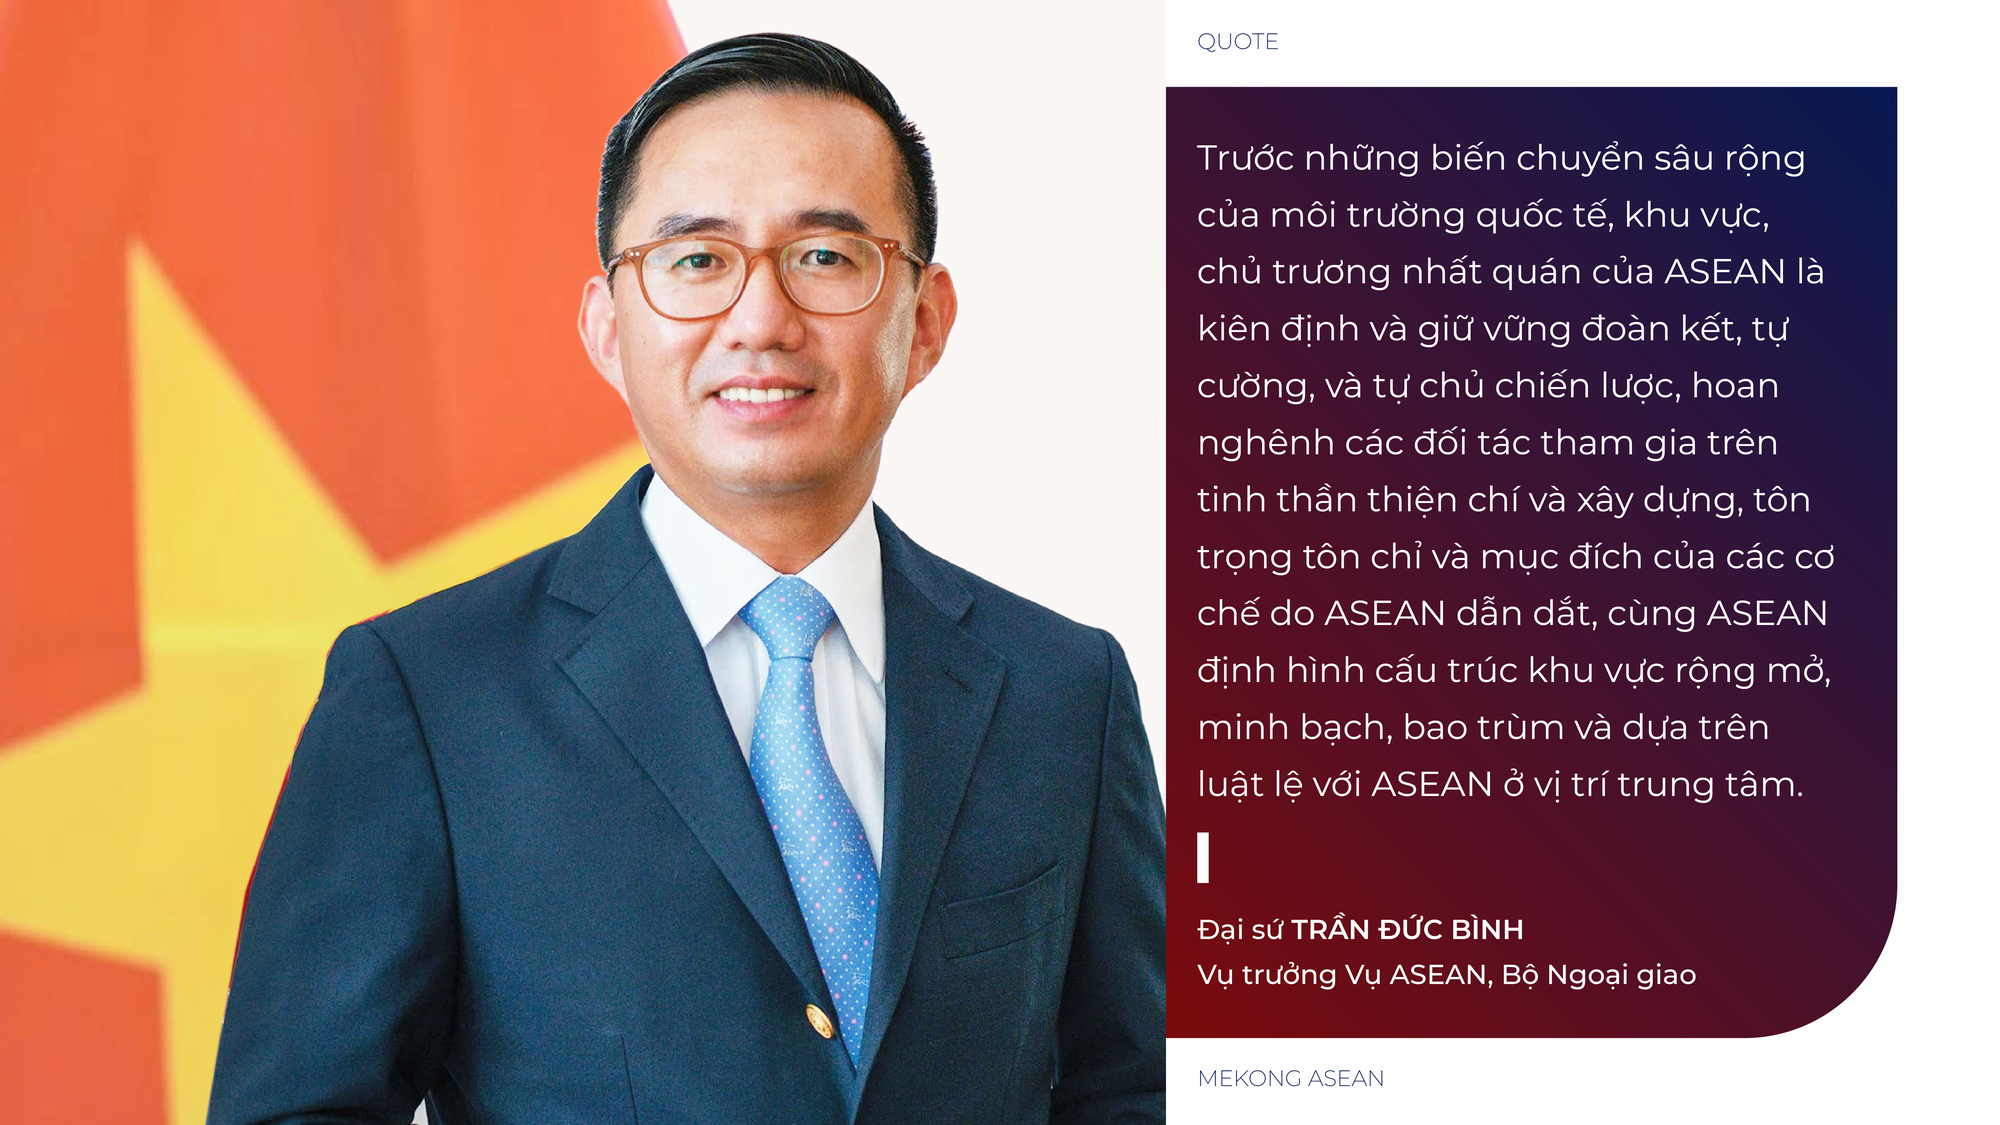 Gia nhập ASEAN: Hành trình Việt Nam mở cánh cửa phát triển và vận hội mới